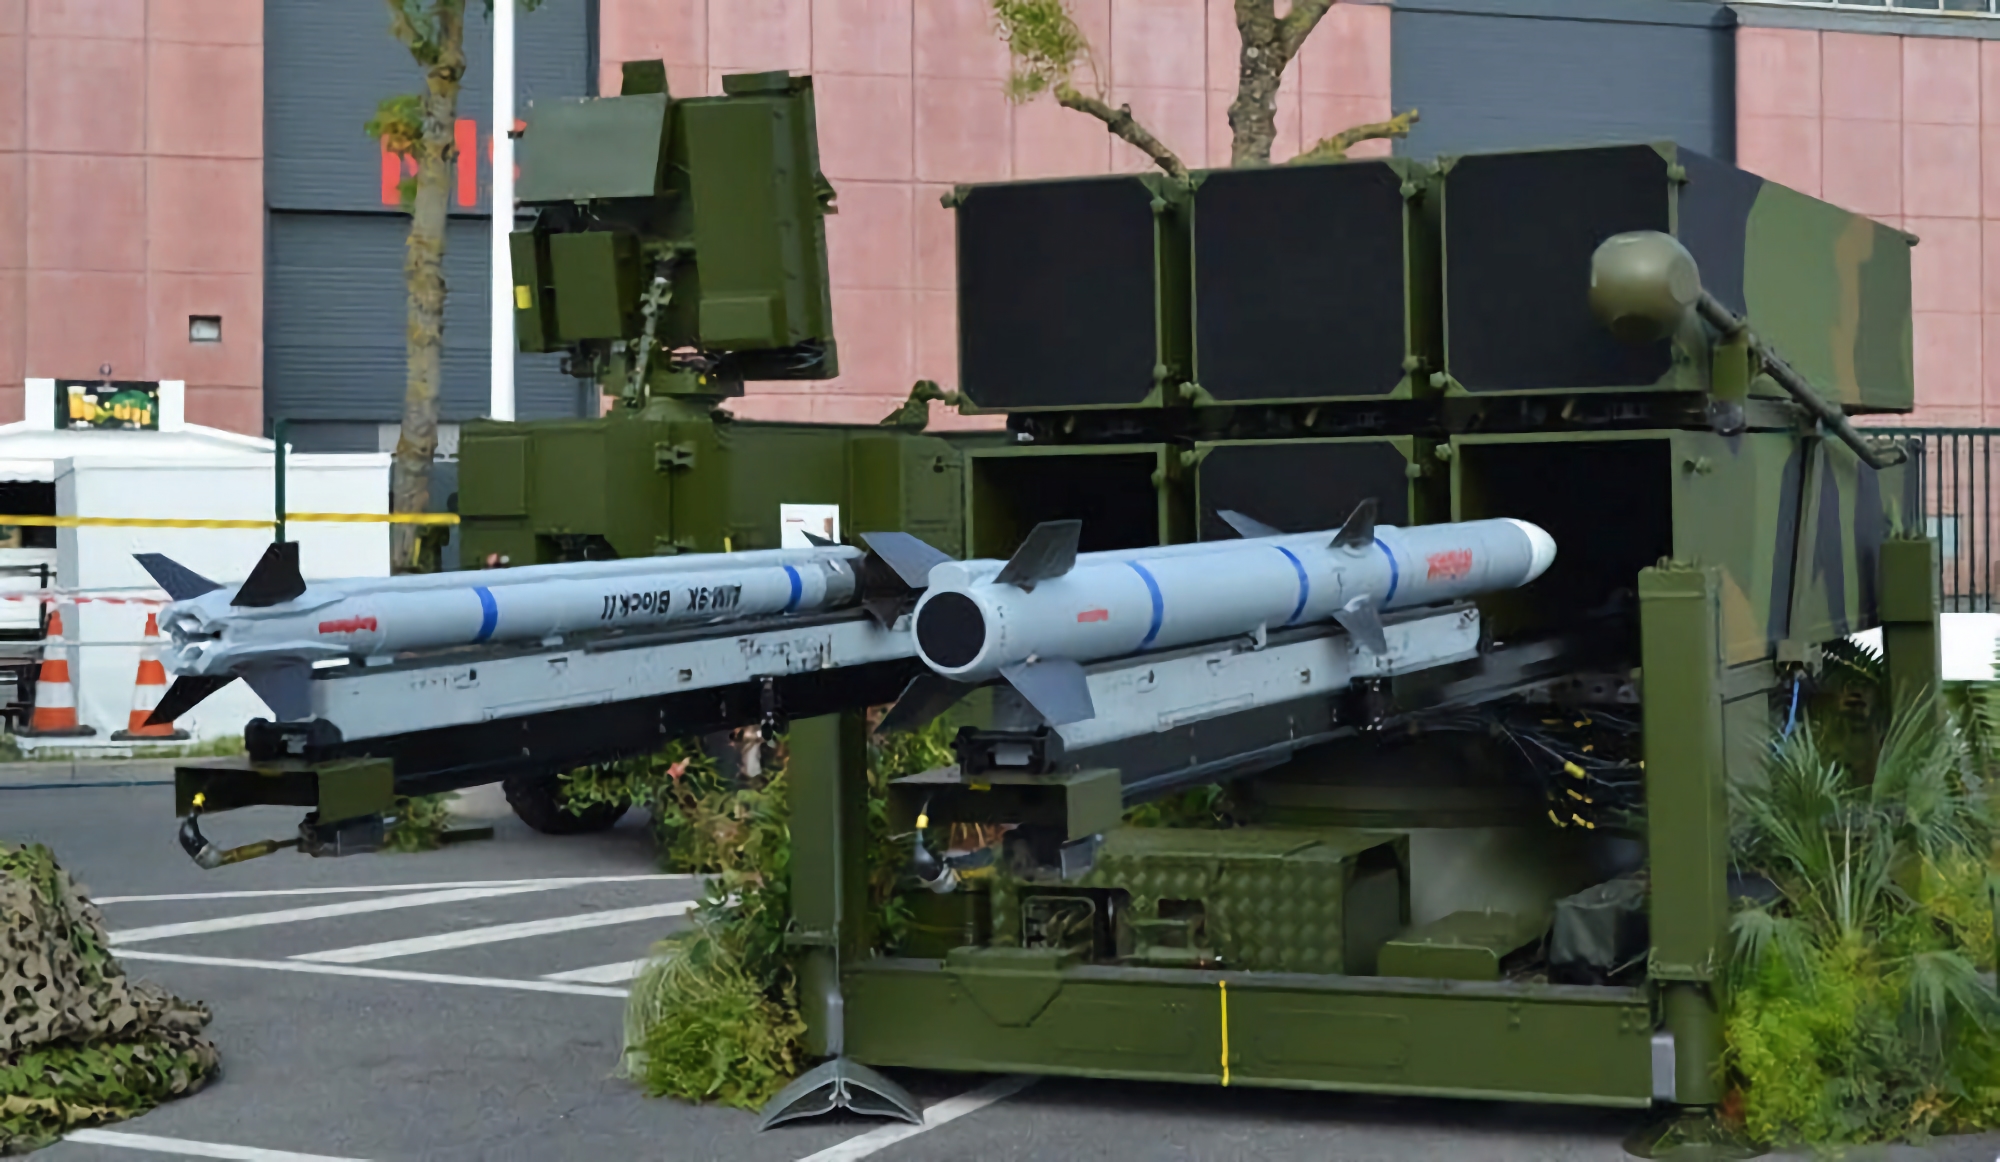 L'AFU ha in servizio NASAMS di terza generazione con missili AIM-9X Sidewinder, la versione più recente del sistema missilistico terra-aria.